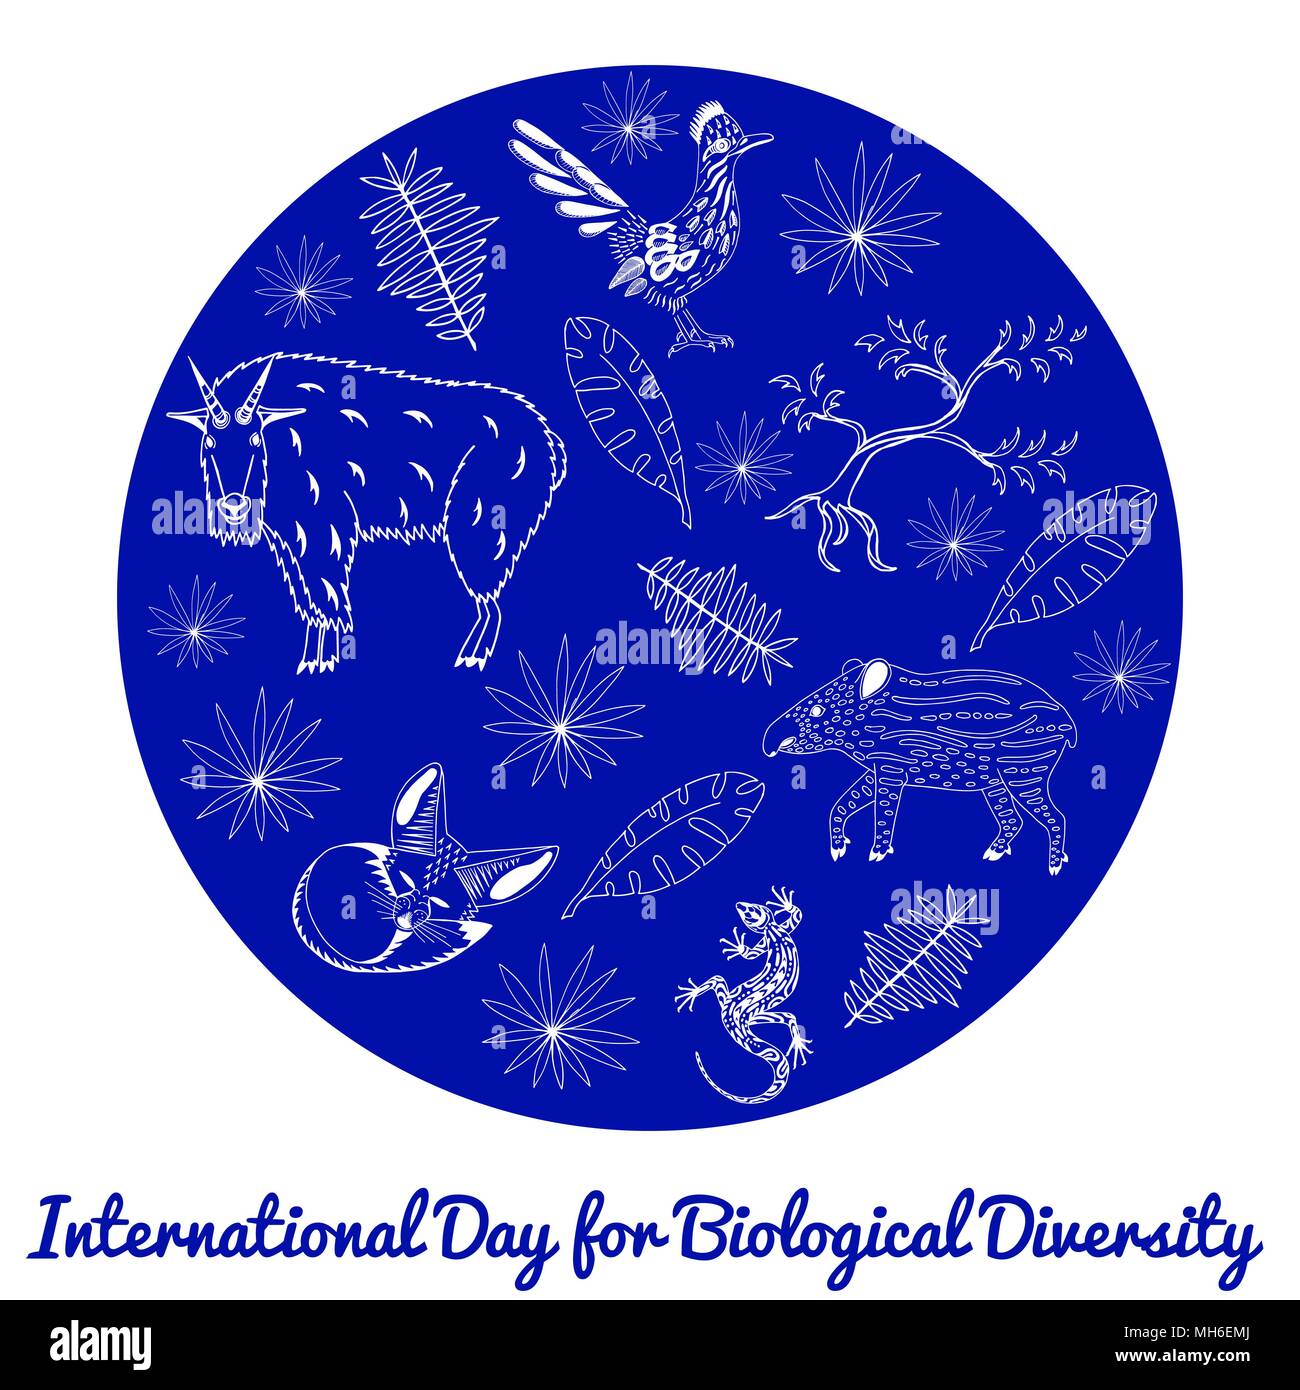 Internationaler Tag für biologische Vielfalt. Das Konzept der ökologischen Urlaub. Tiere, Baum, Blätter, Kontur Zeichnungen. Blauer Kreis auf weißem backgro Stock Vektor